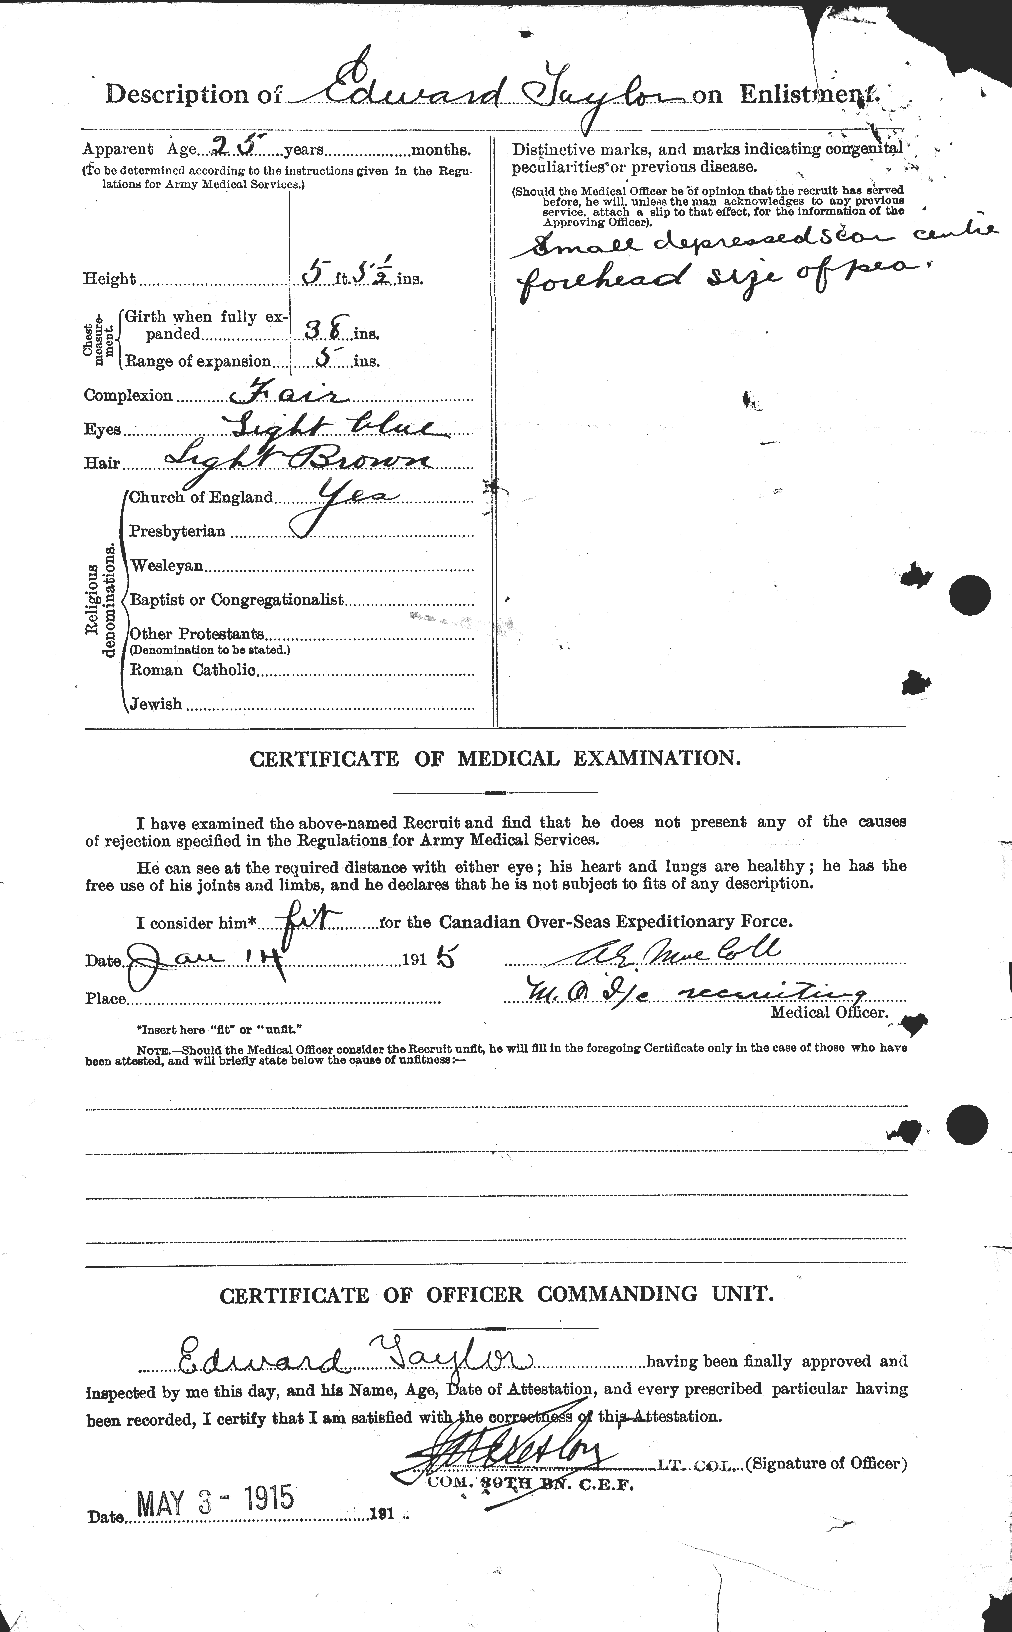 Dossiers du Personnel de la Première Guerre mondiale - CEC 627296b